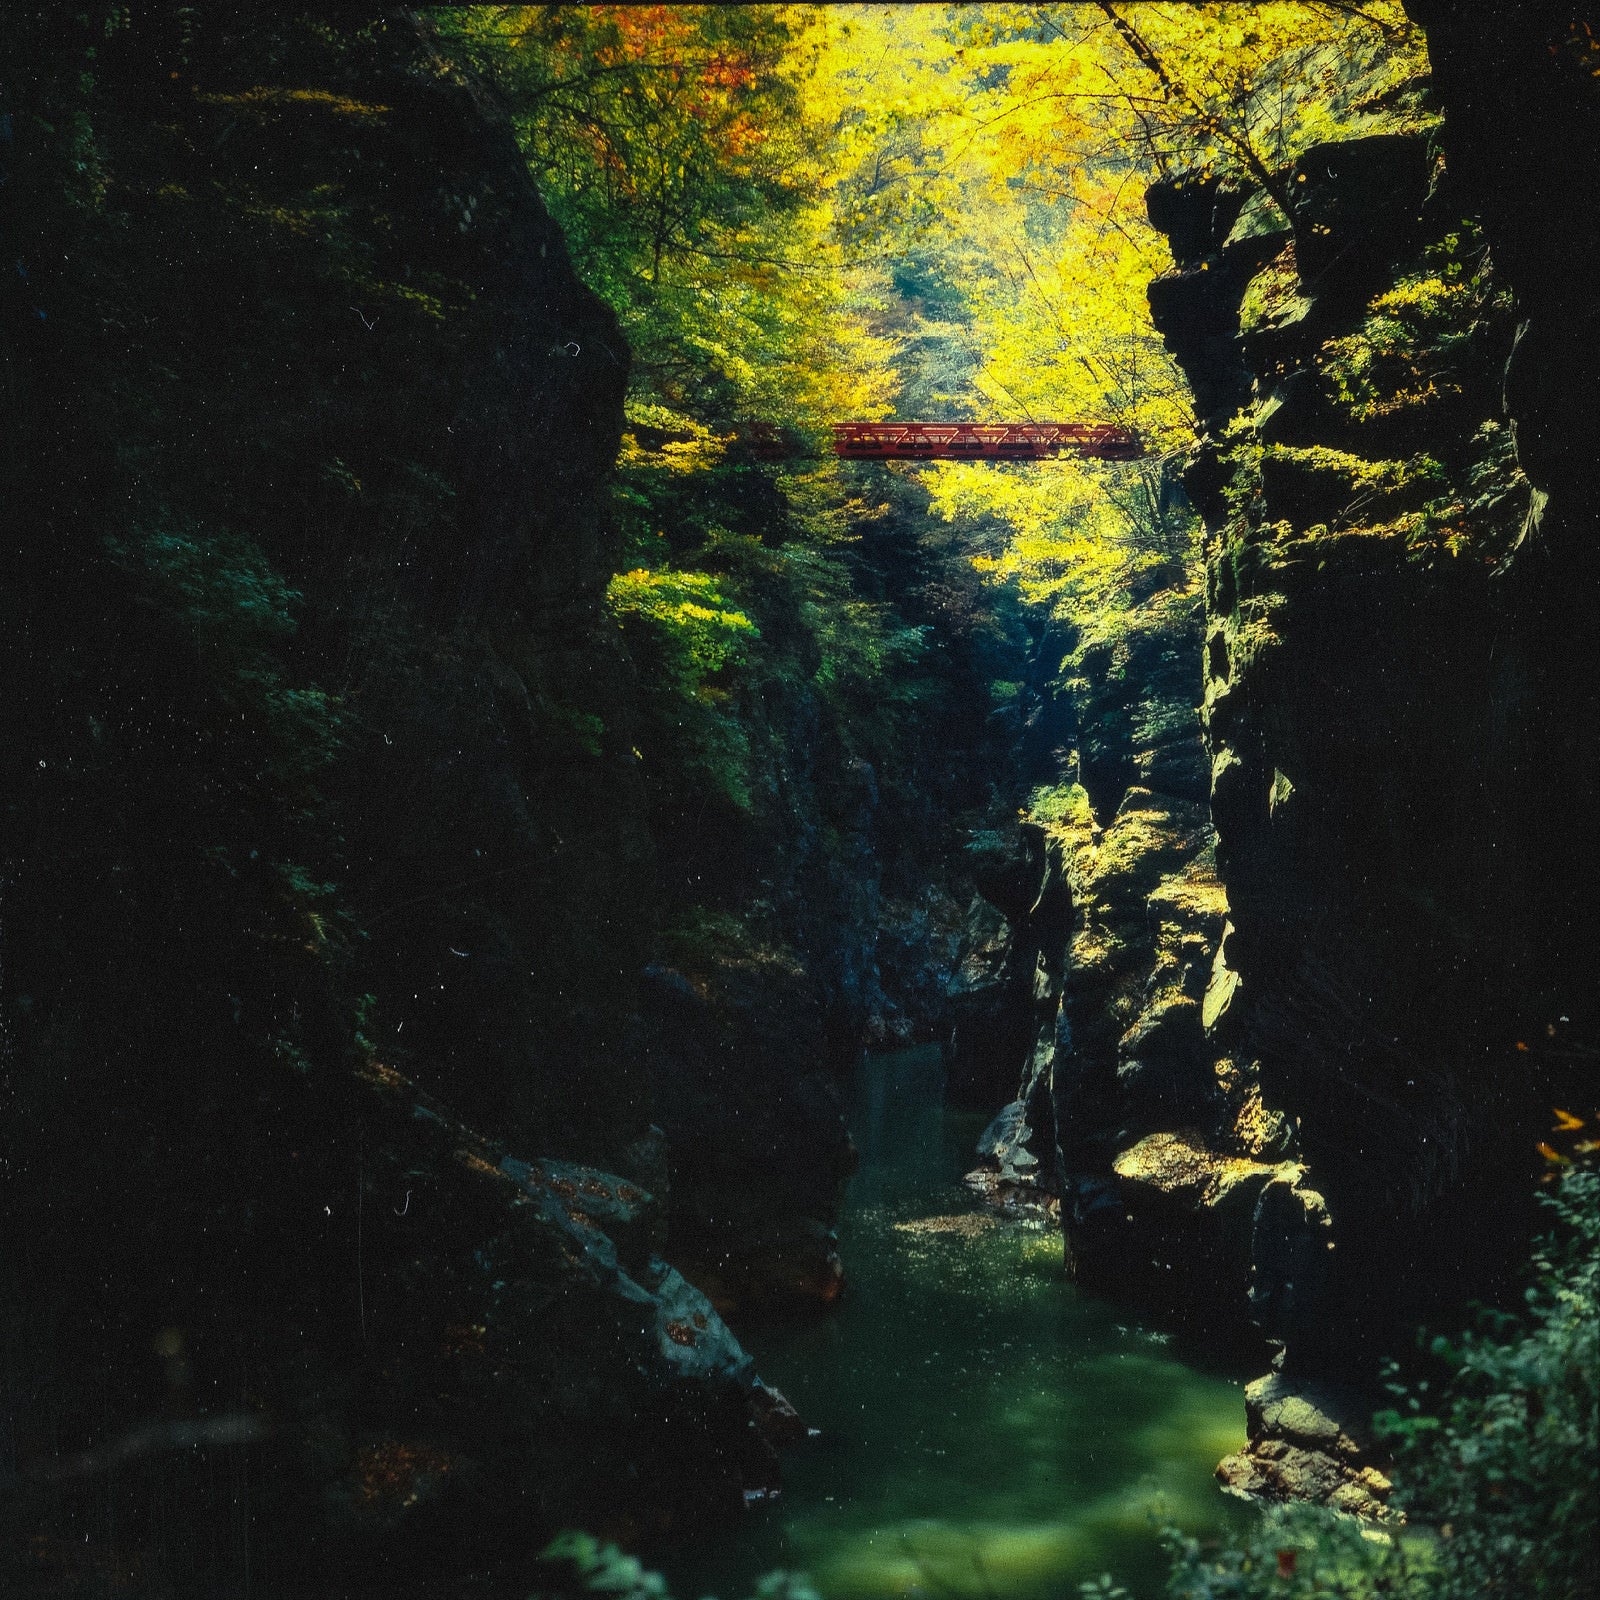 「吾妻渓谷の崖」の写真